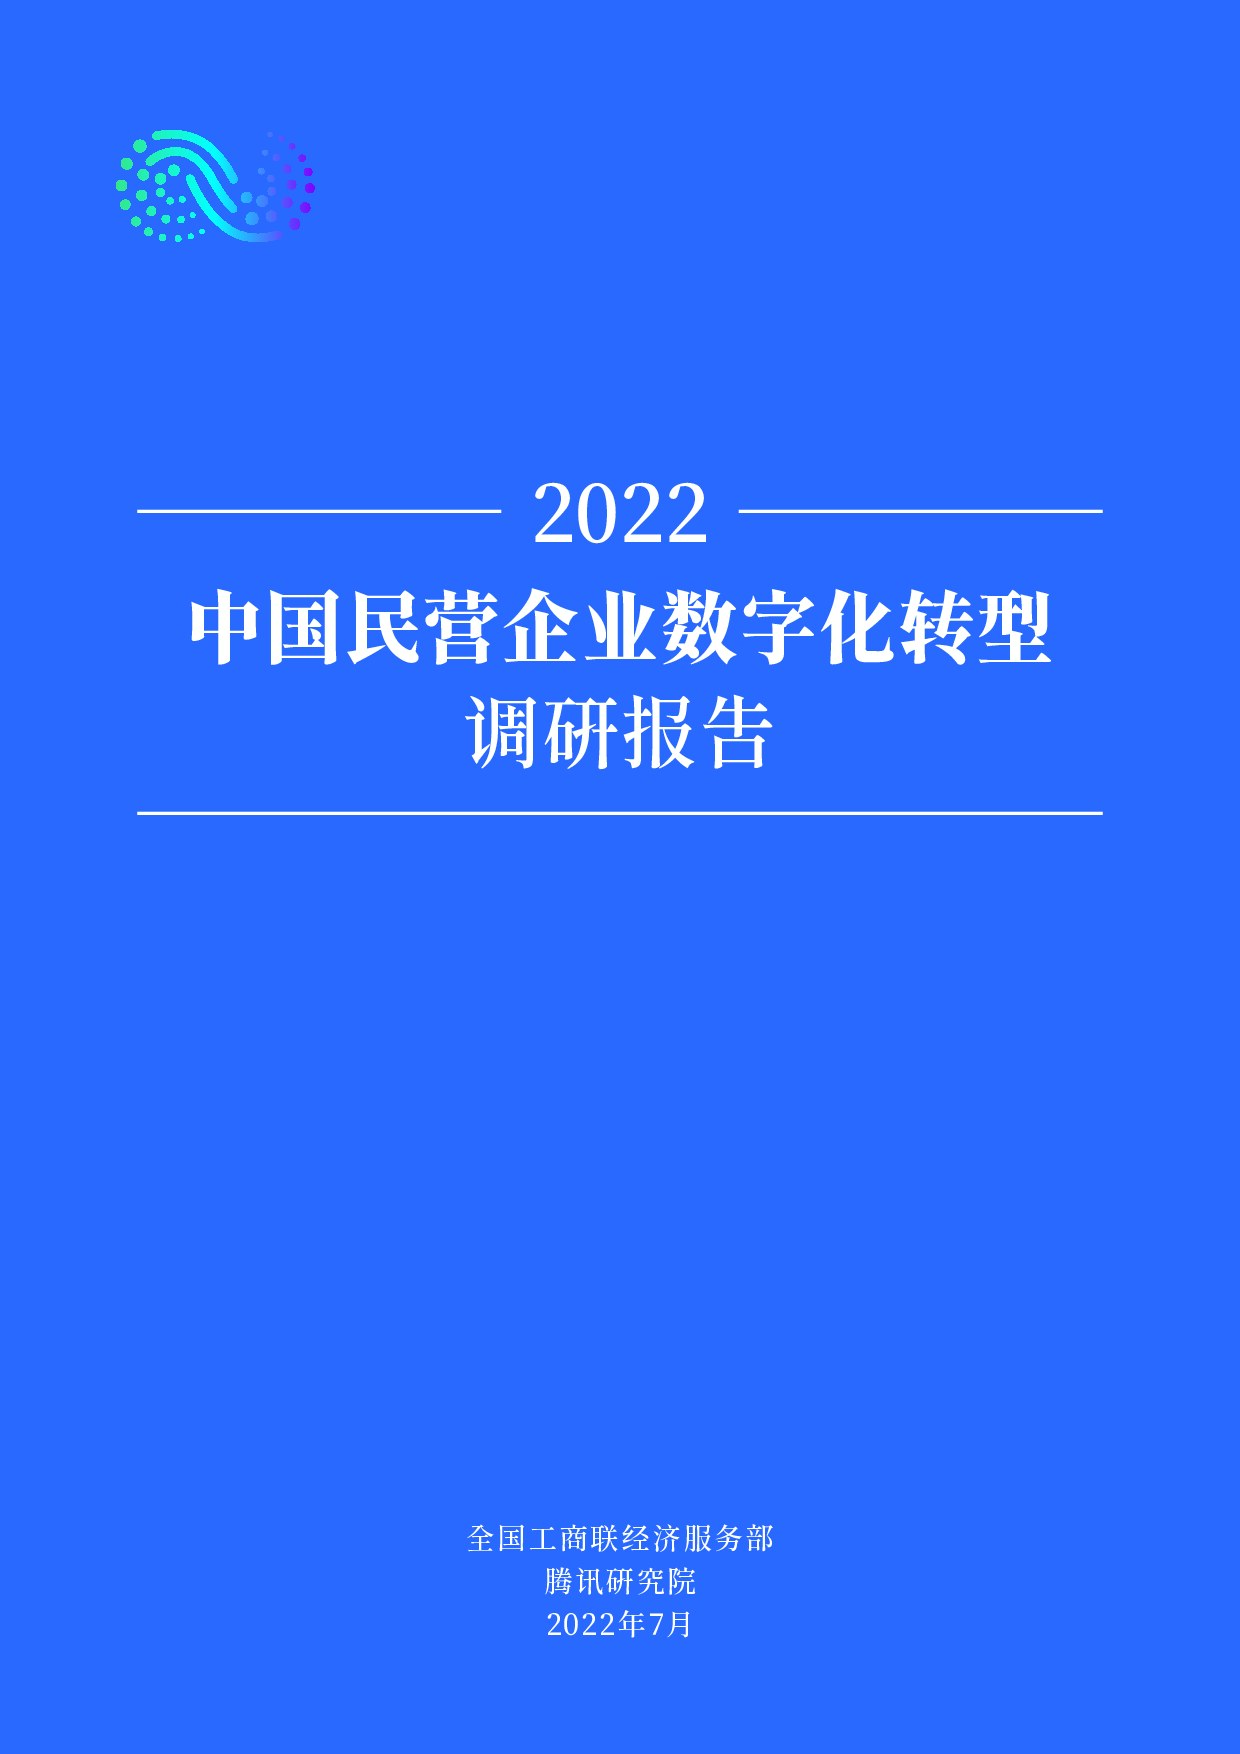 2022中国民营企业数字化转型调研报告062426再修改版.indd